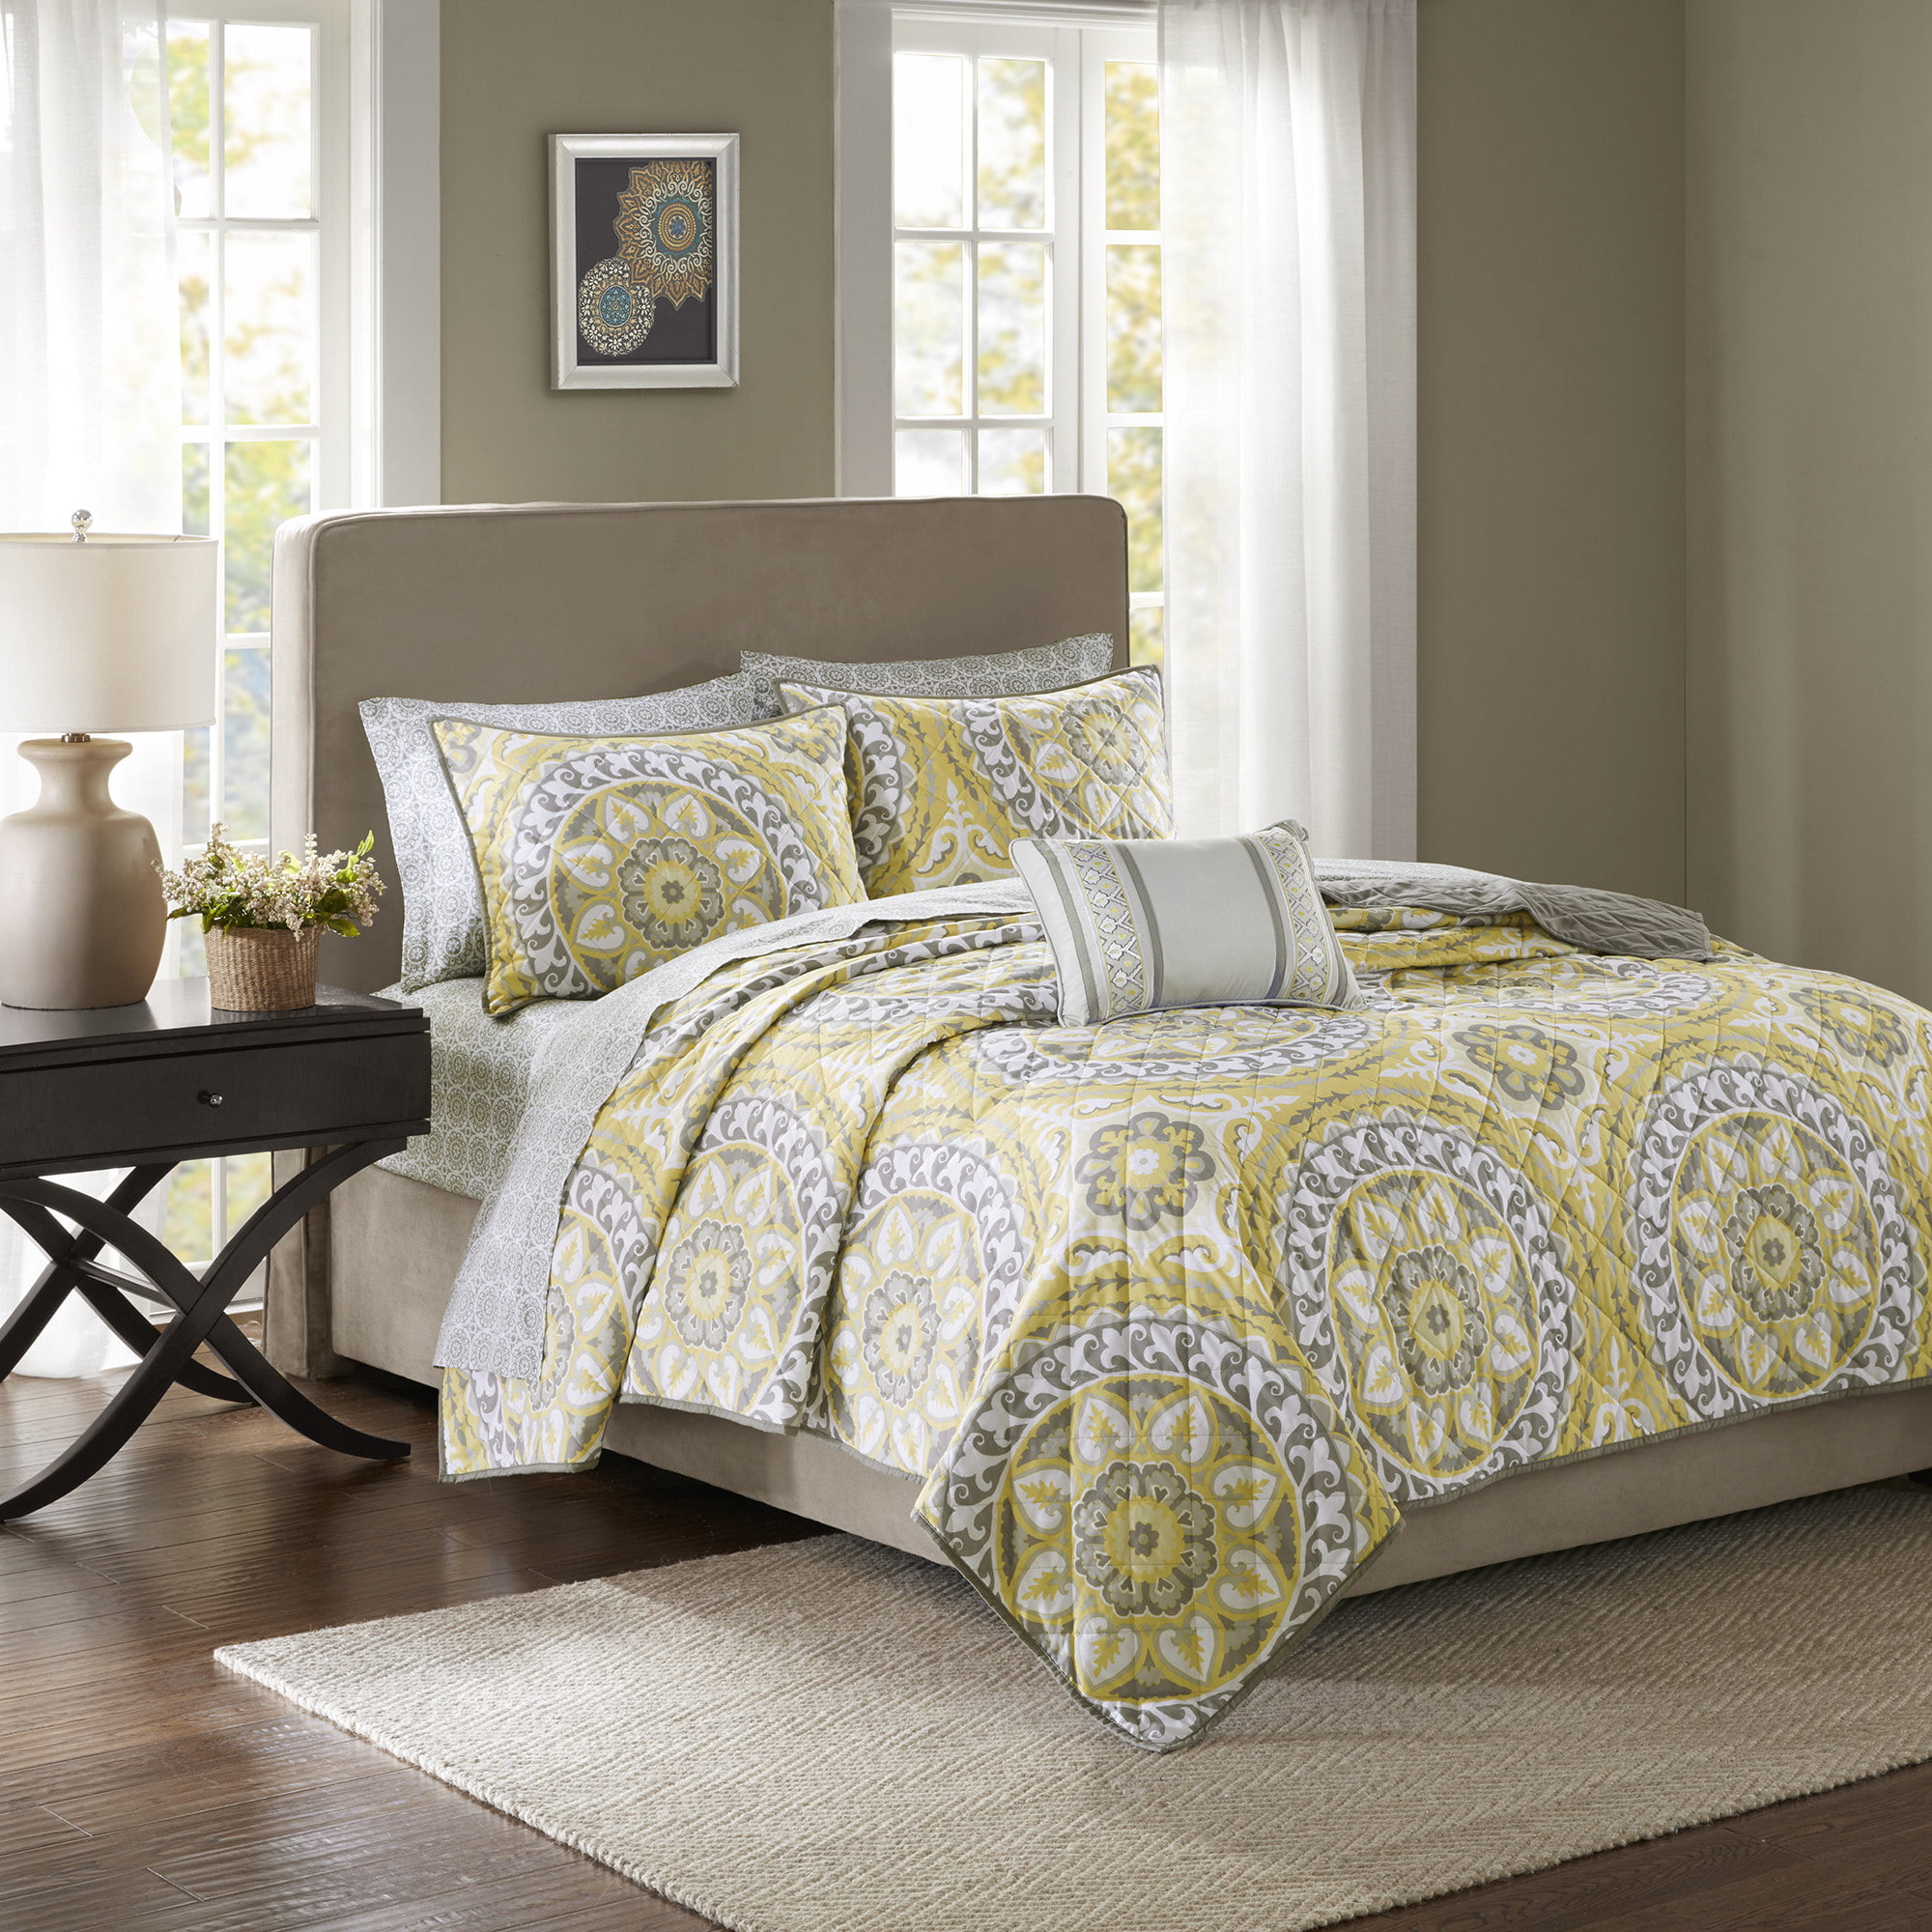 Lanco Diane Elegant 6 Piece Reversible Comforter Bedding Set Bed Size